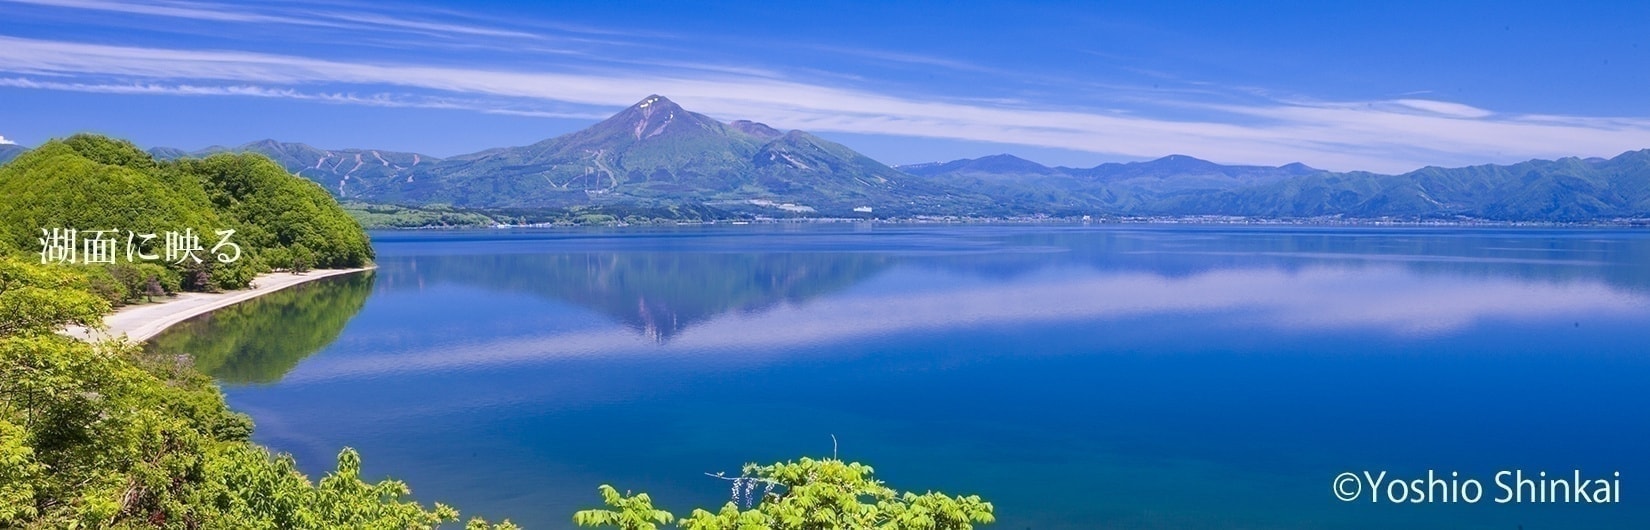 猪苗代湖の新緑と磐梯山